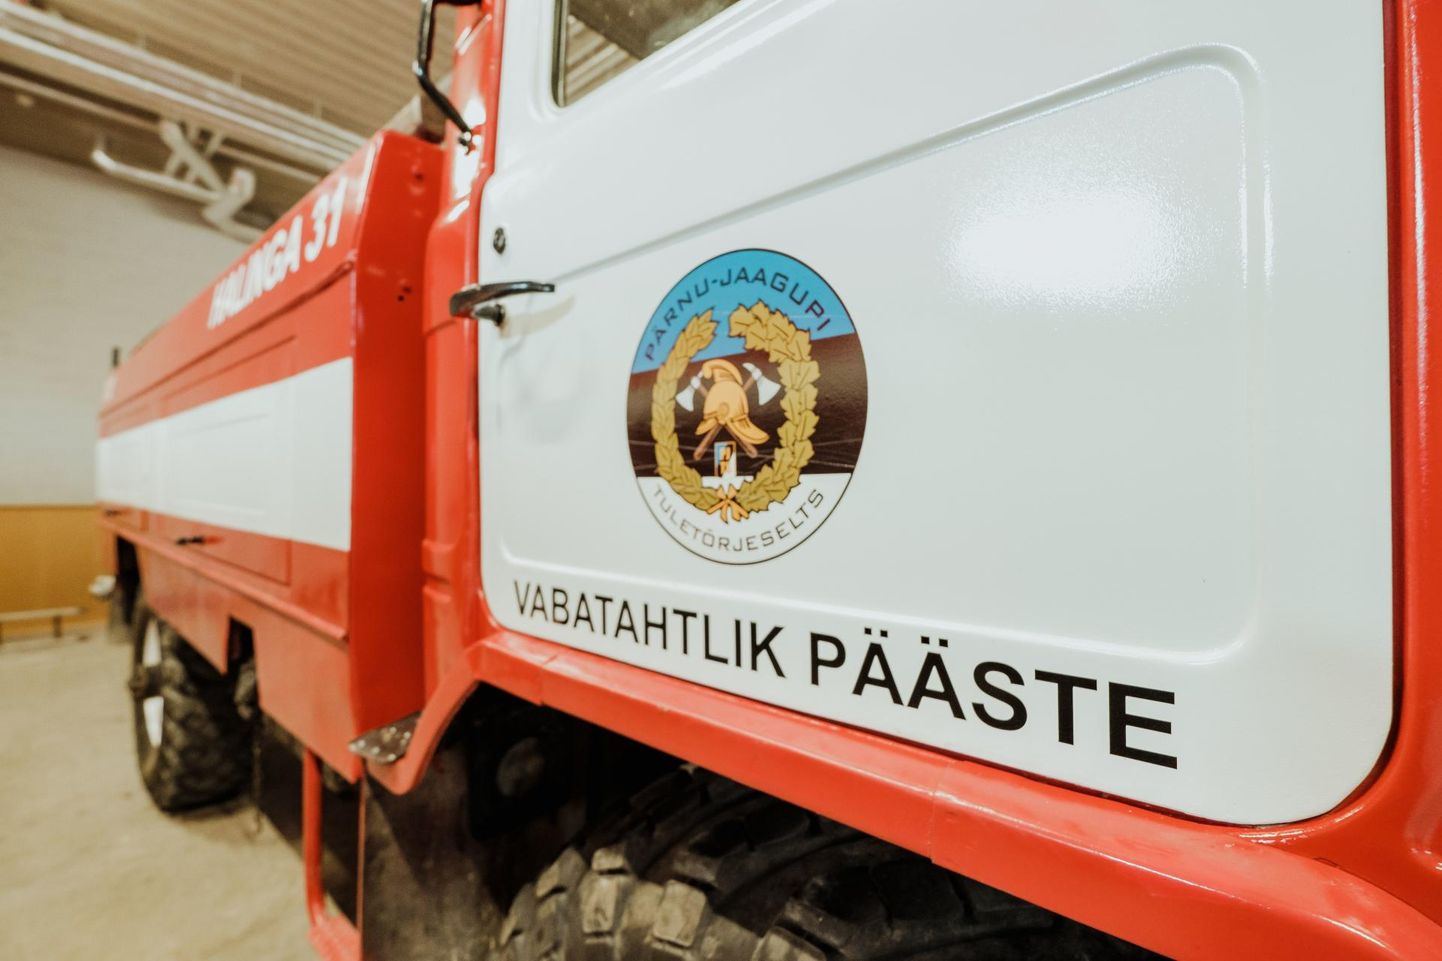 Toetust saavad taotleda ka vabatahtliku päästekomandot pidavad omavalitsused. Pildil Pärnu-Jaagupi tuletõrjeselts.